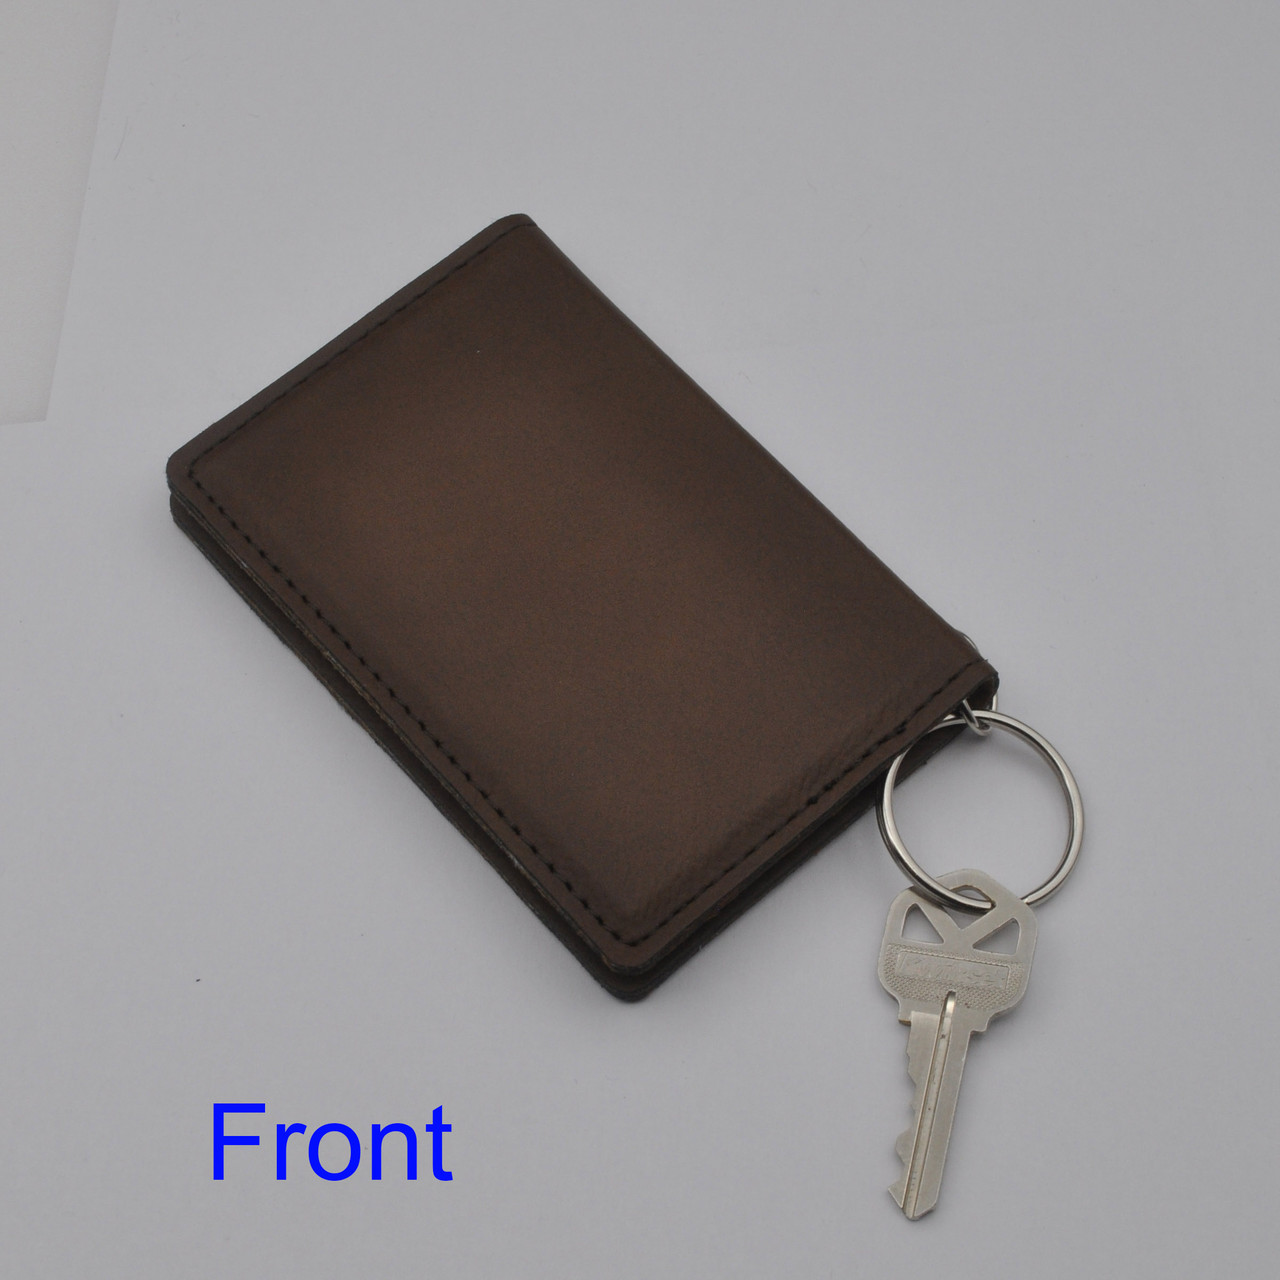 Cute Women's Keychain Wallet, Vegan Leather ID Case Accessory, Sim